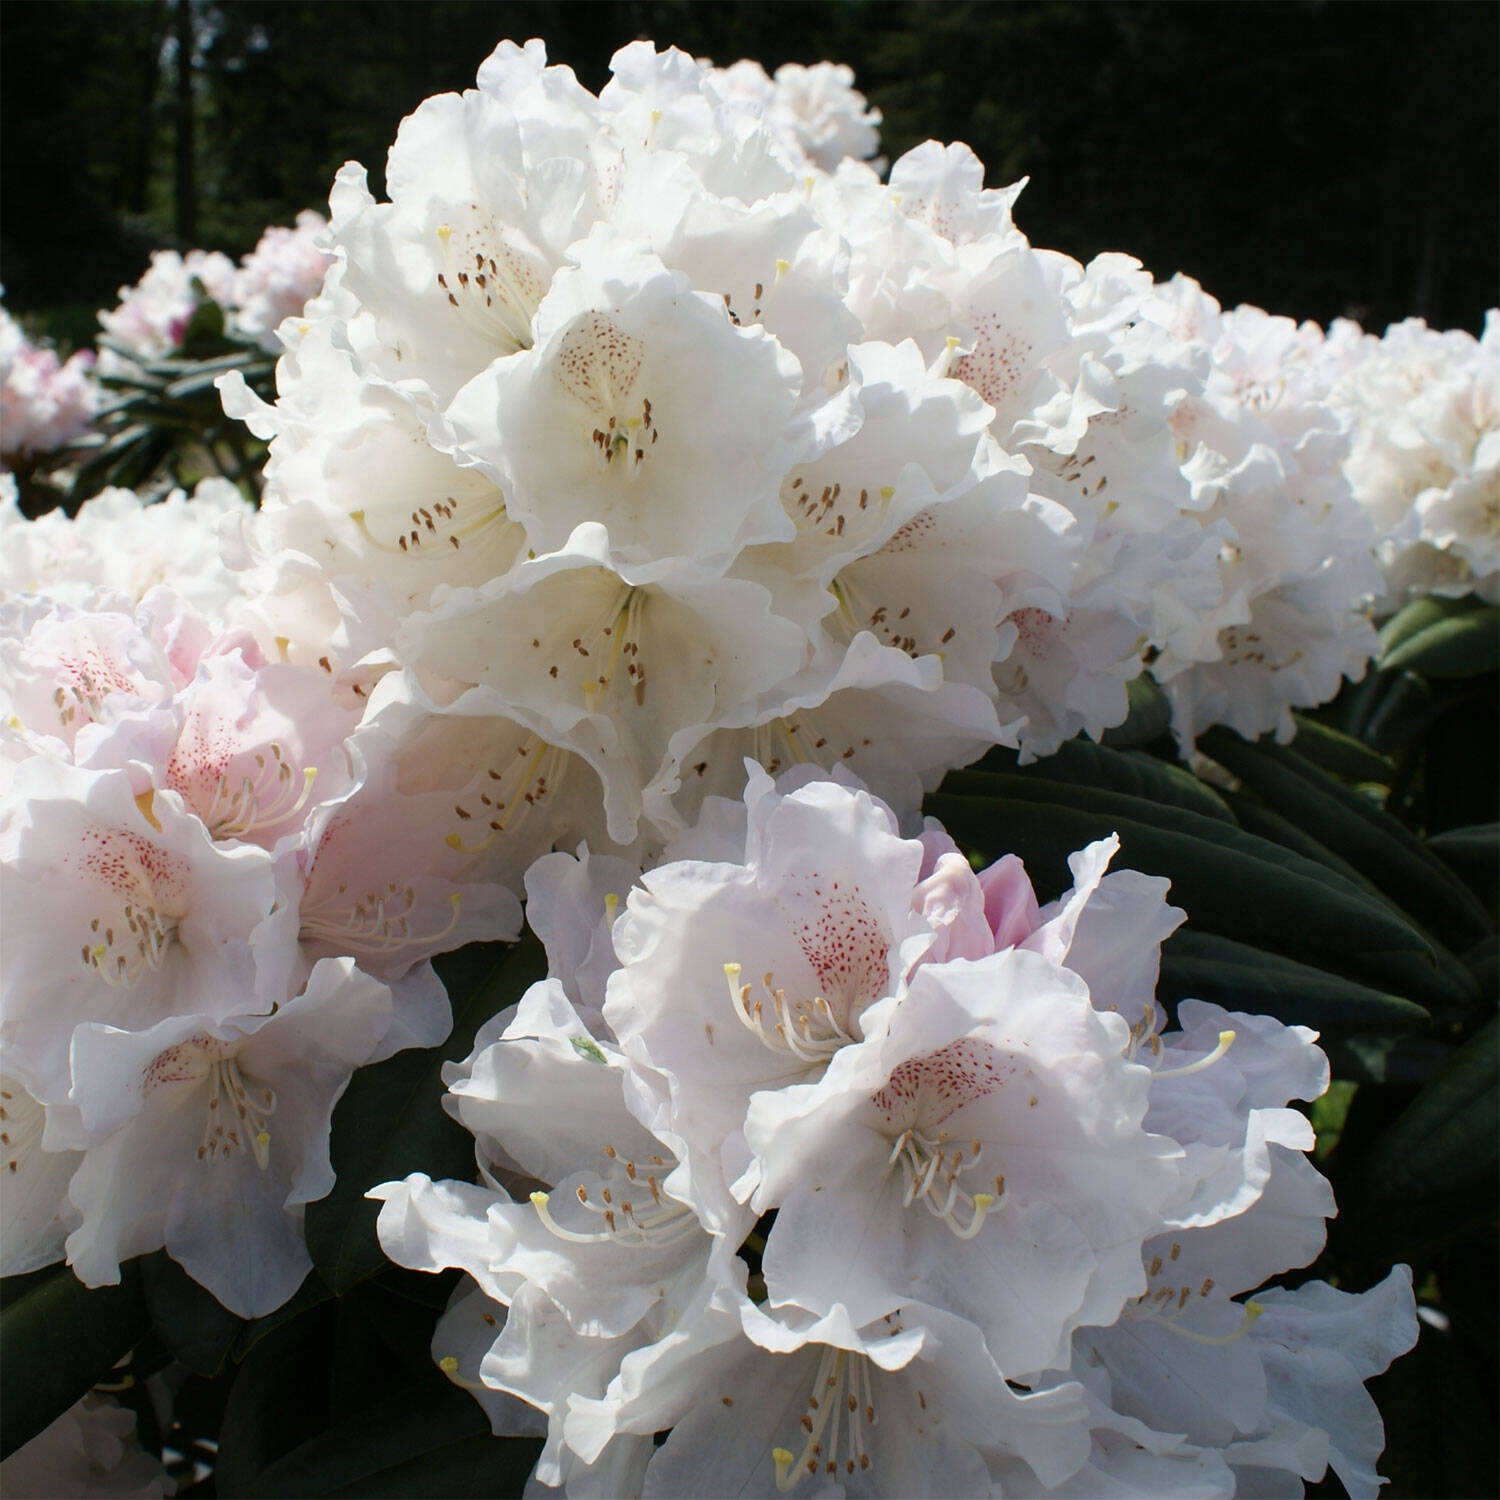 Kategorie <b>Hecken </b> - Rhododendron 'Schneekrone' - Rhododendron yakushimanum 'Schneekrone'